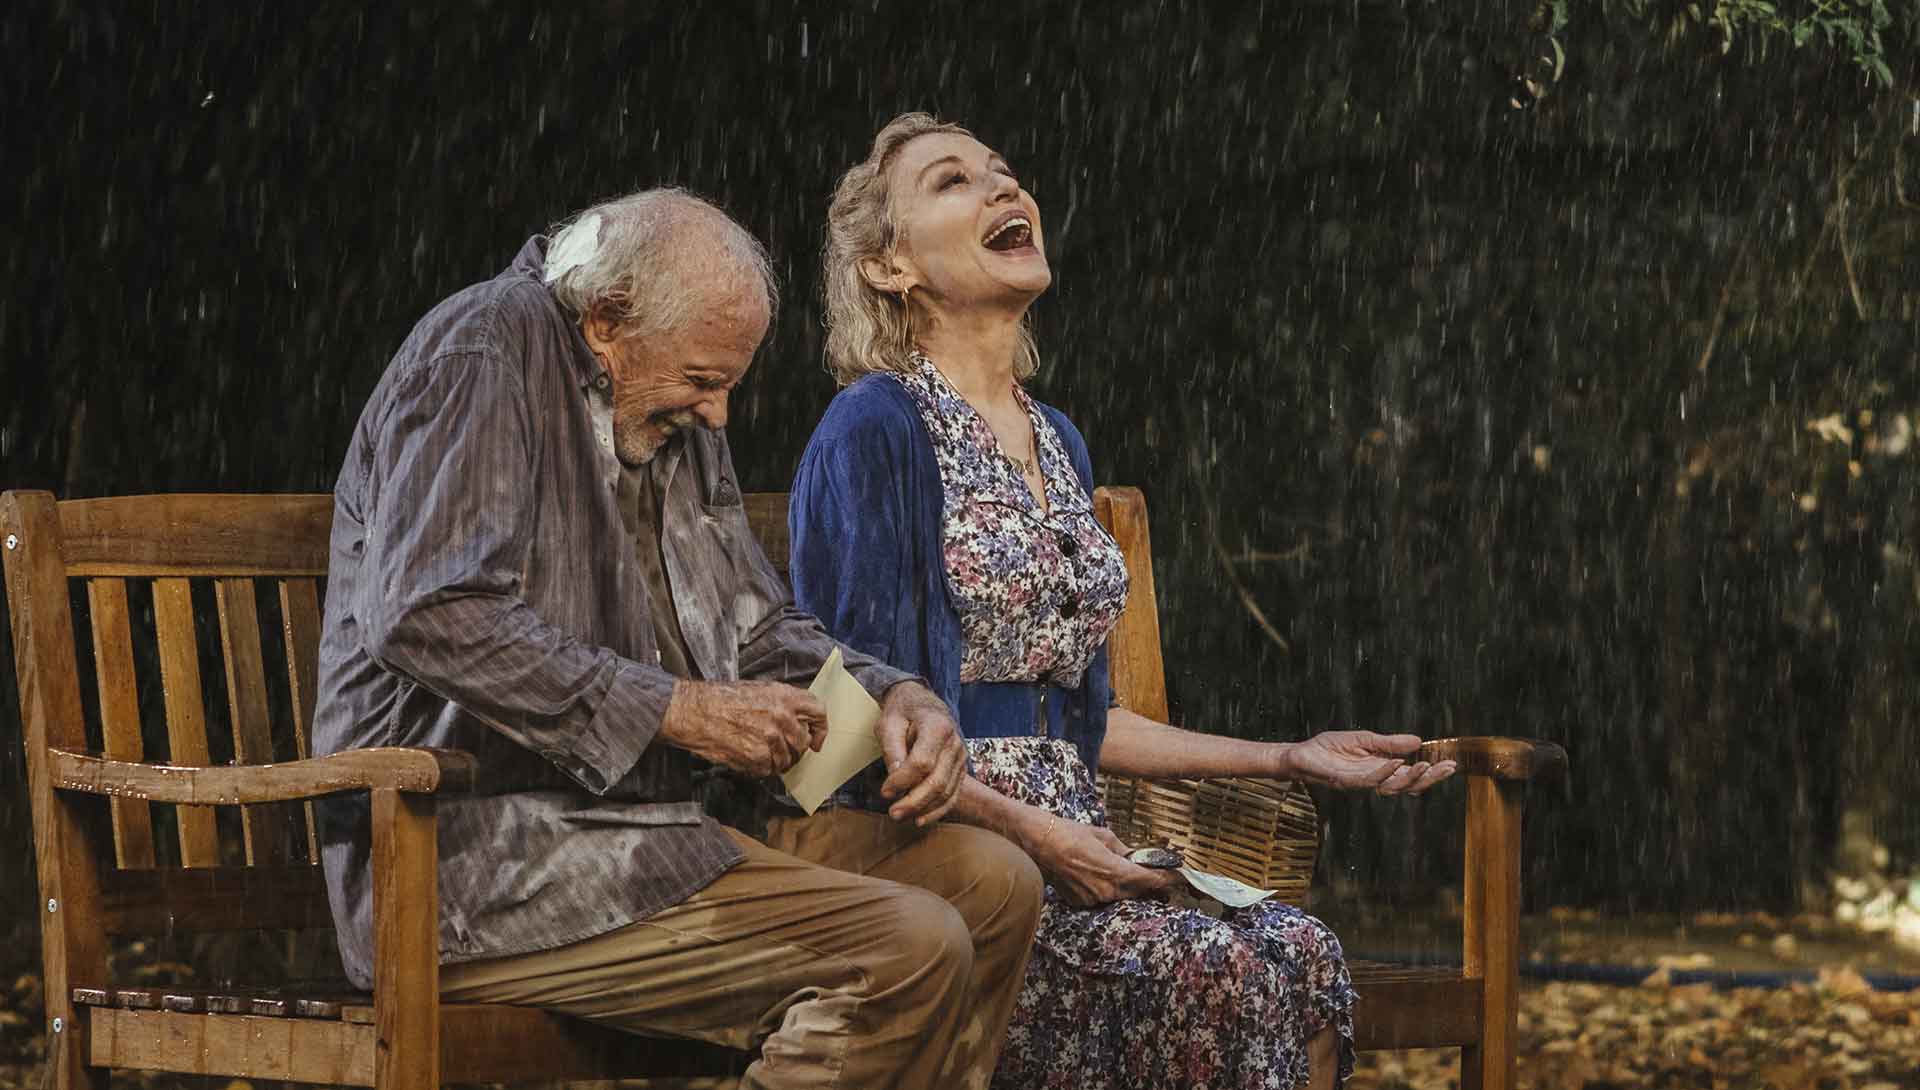 Un homme septuagénaire et une femme quadragénaire rigolent sous la pluie. Extrait du film Remember me de Martin Rosete